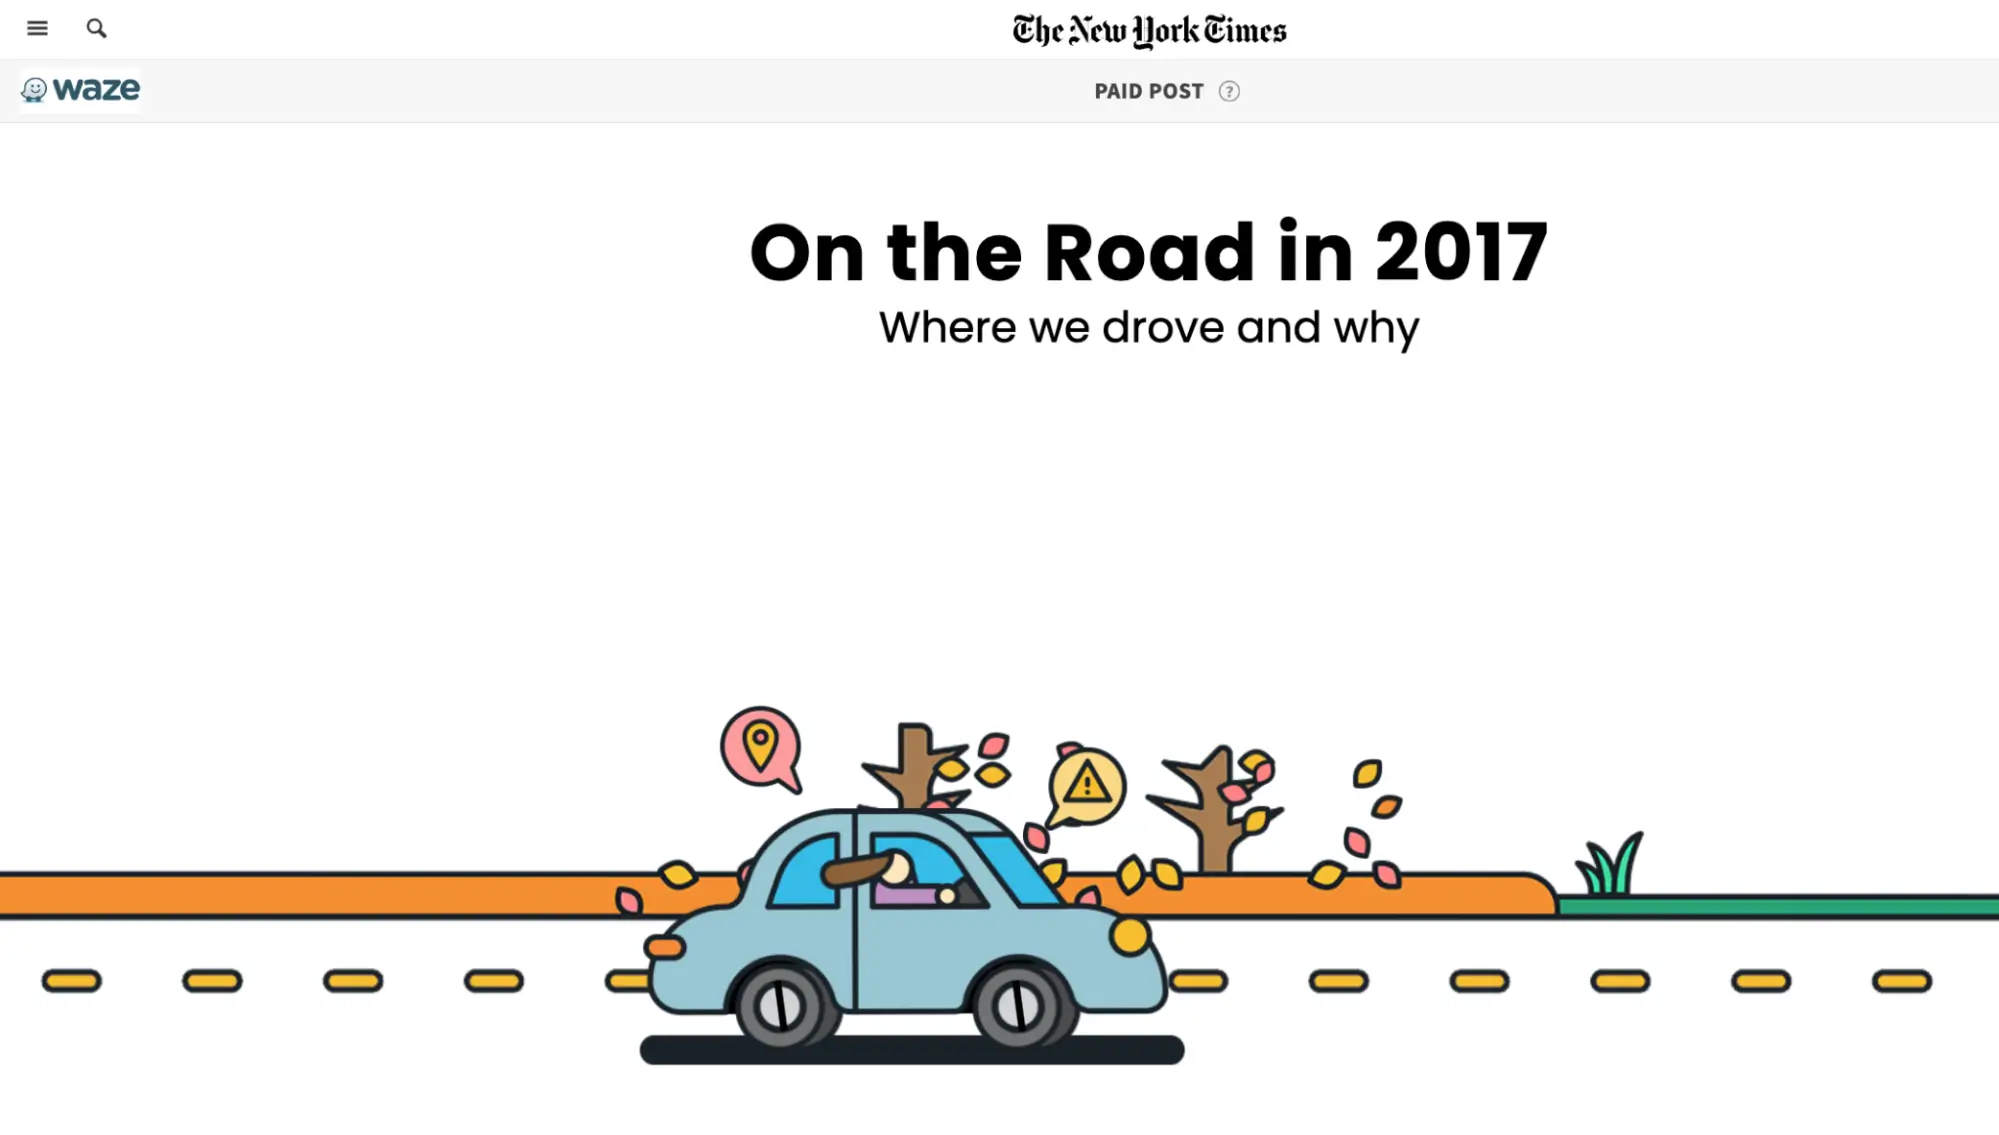 此圖顯示了 Waze 與《紐約時報》合作創建的「On the Road」活動，其特色是基於真實應用資料的互動內容。該活動旨在揭示驅動趨勢及其背後的原因，透過帶有引人注目的圖形的互動頁面提供資訊豐富且可共享的內容。